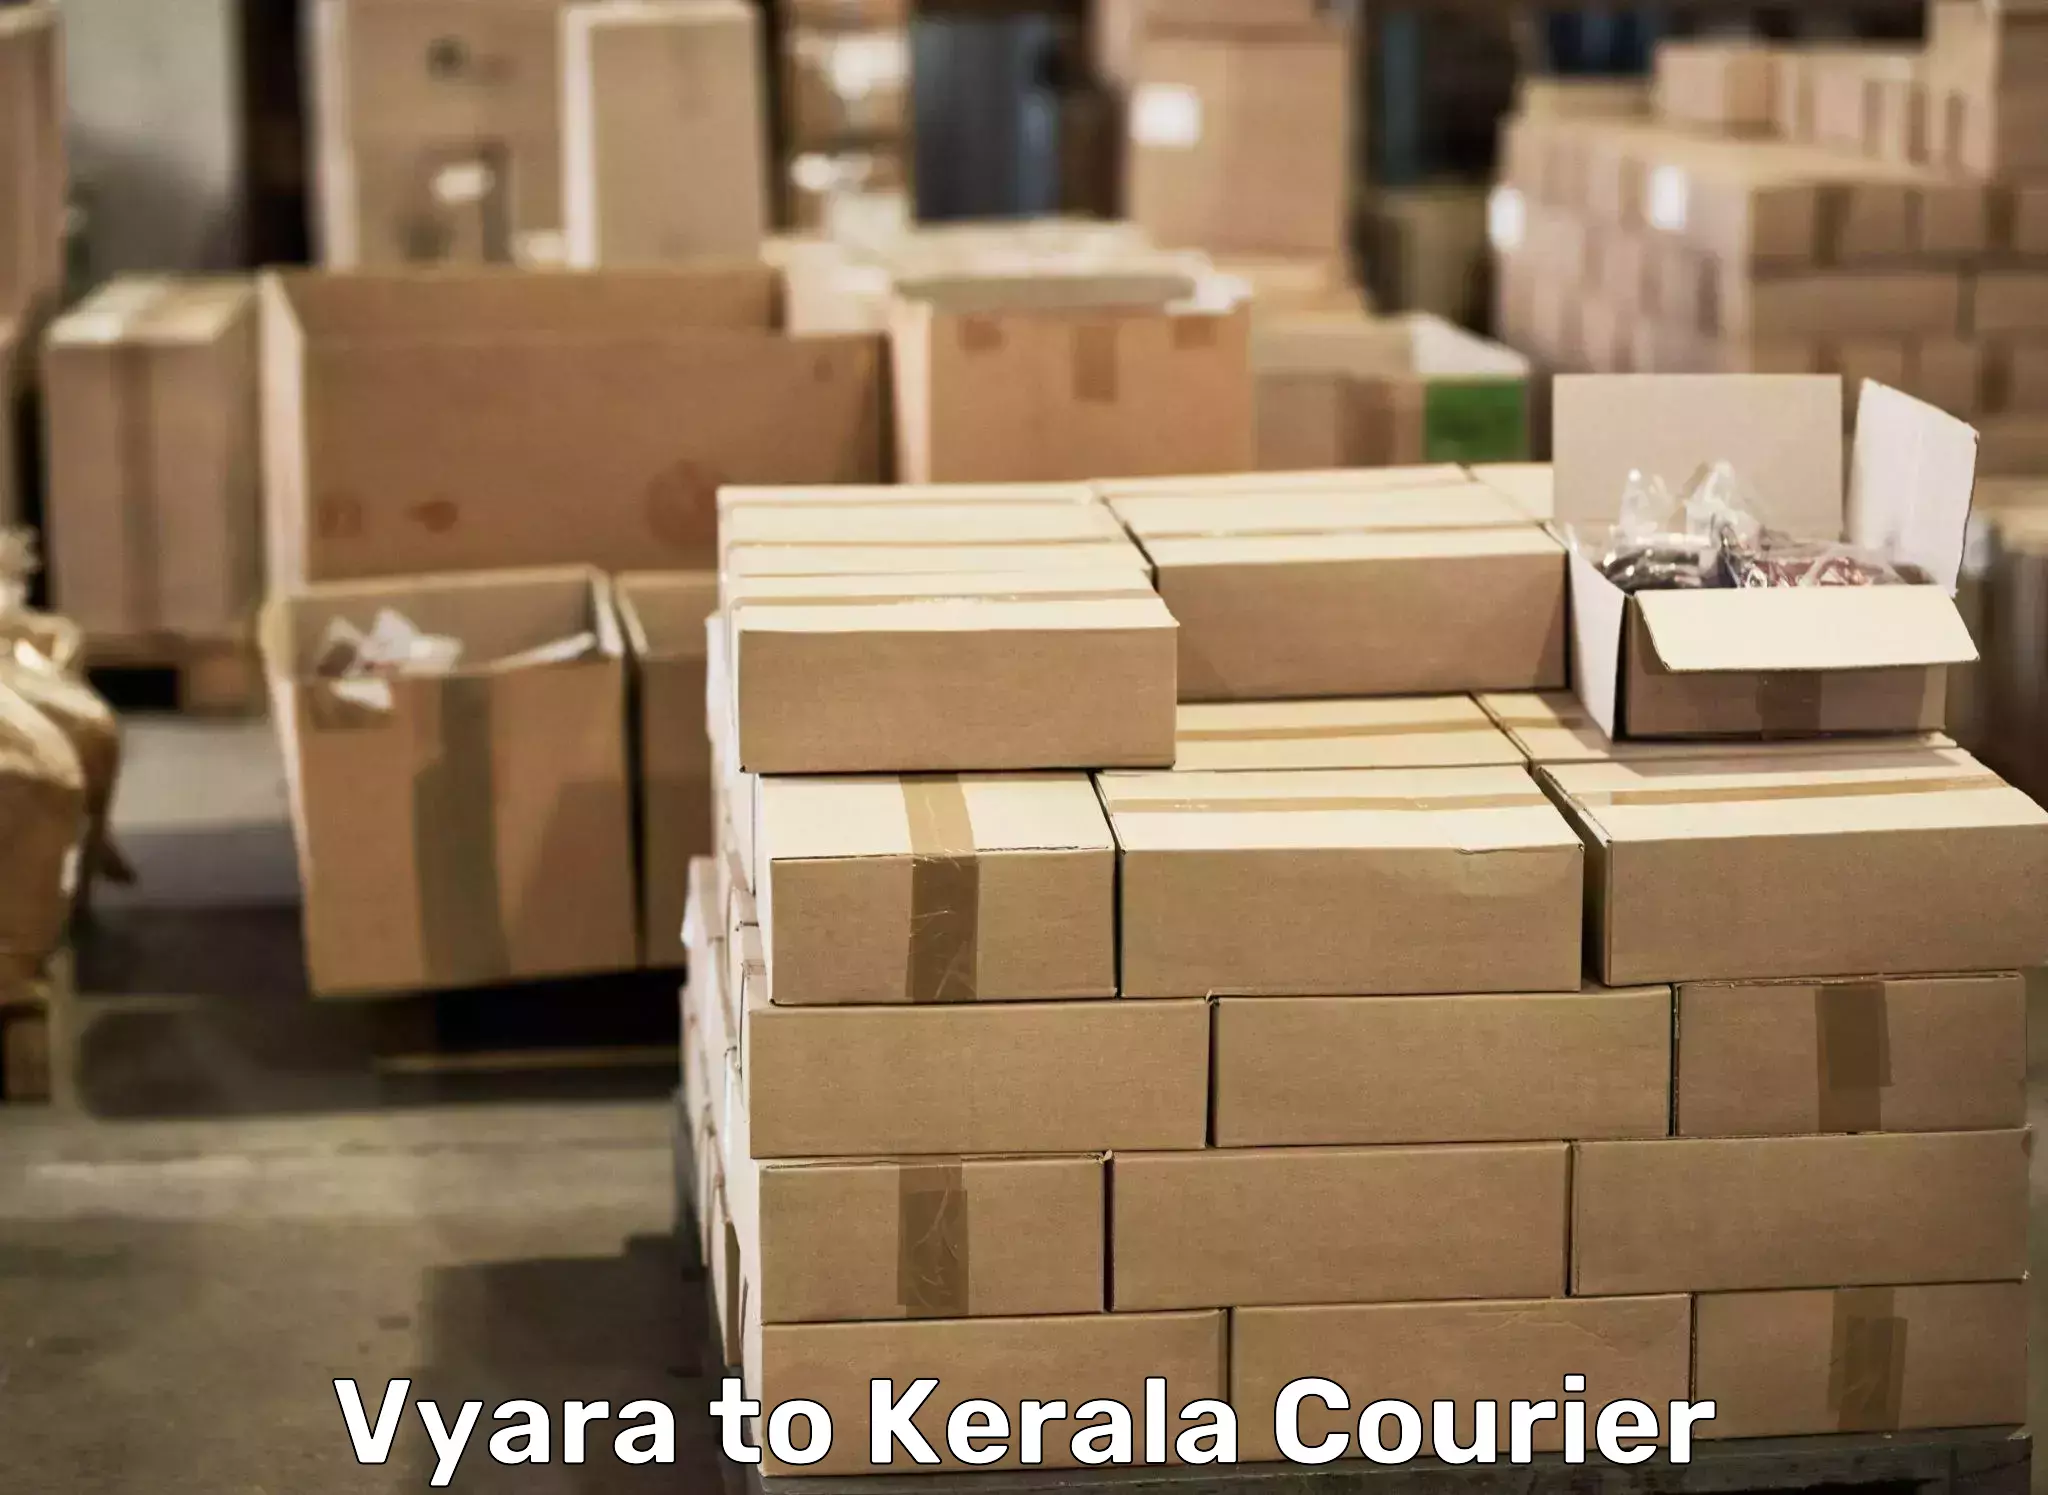 Professional movers and packers Vyara to Kottayam